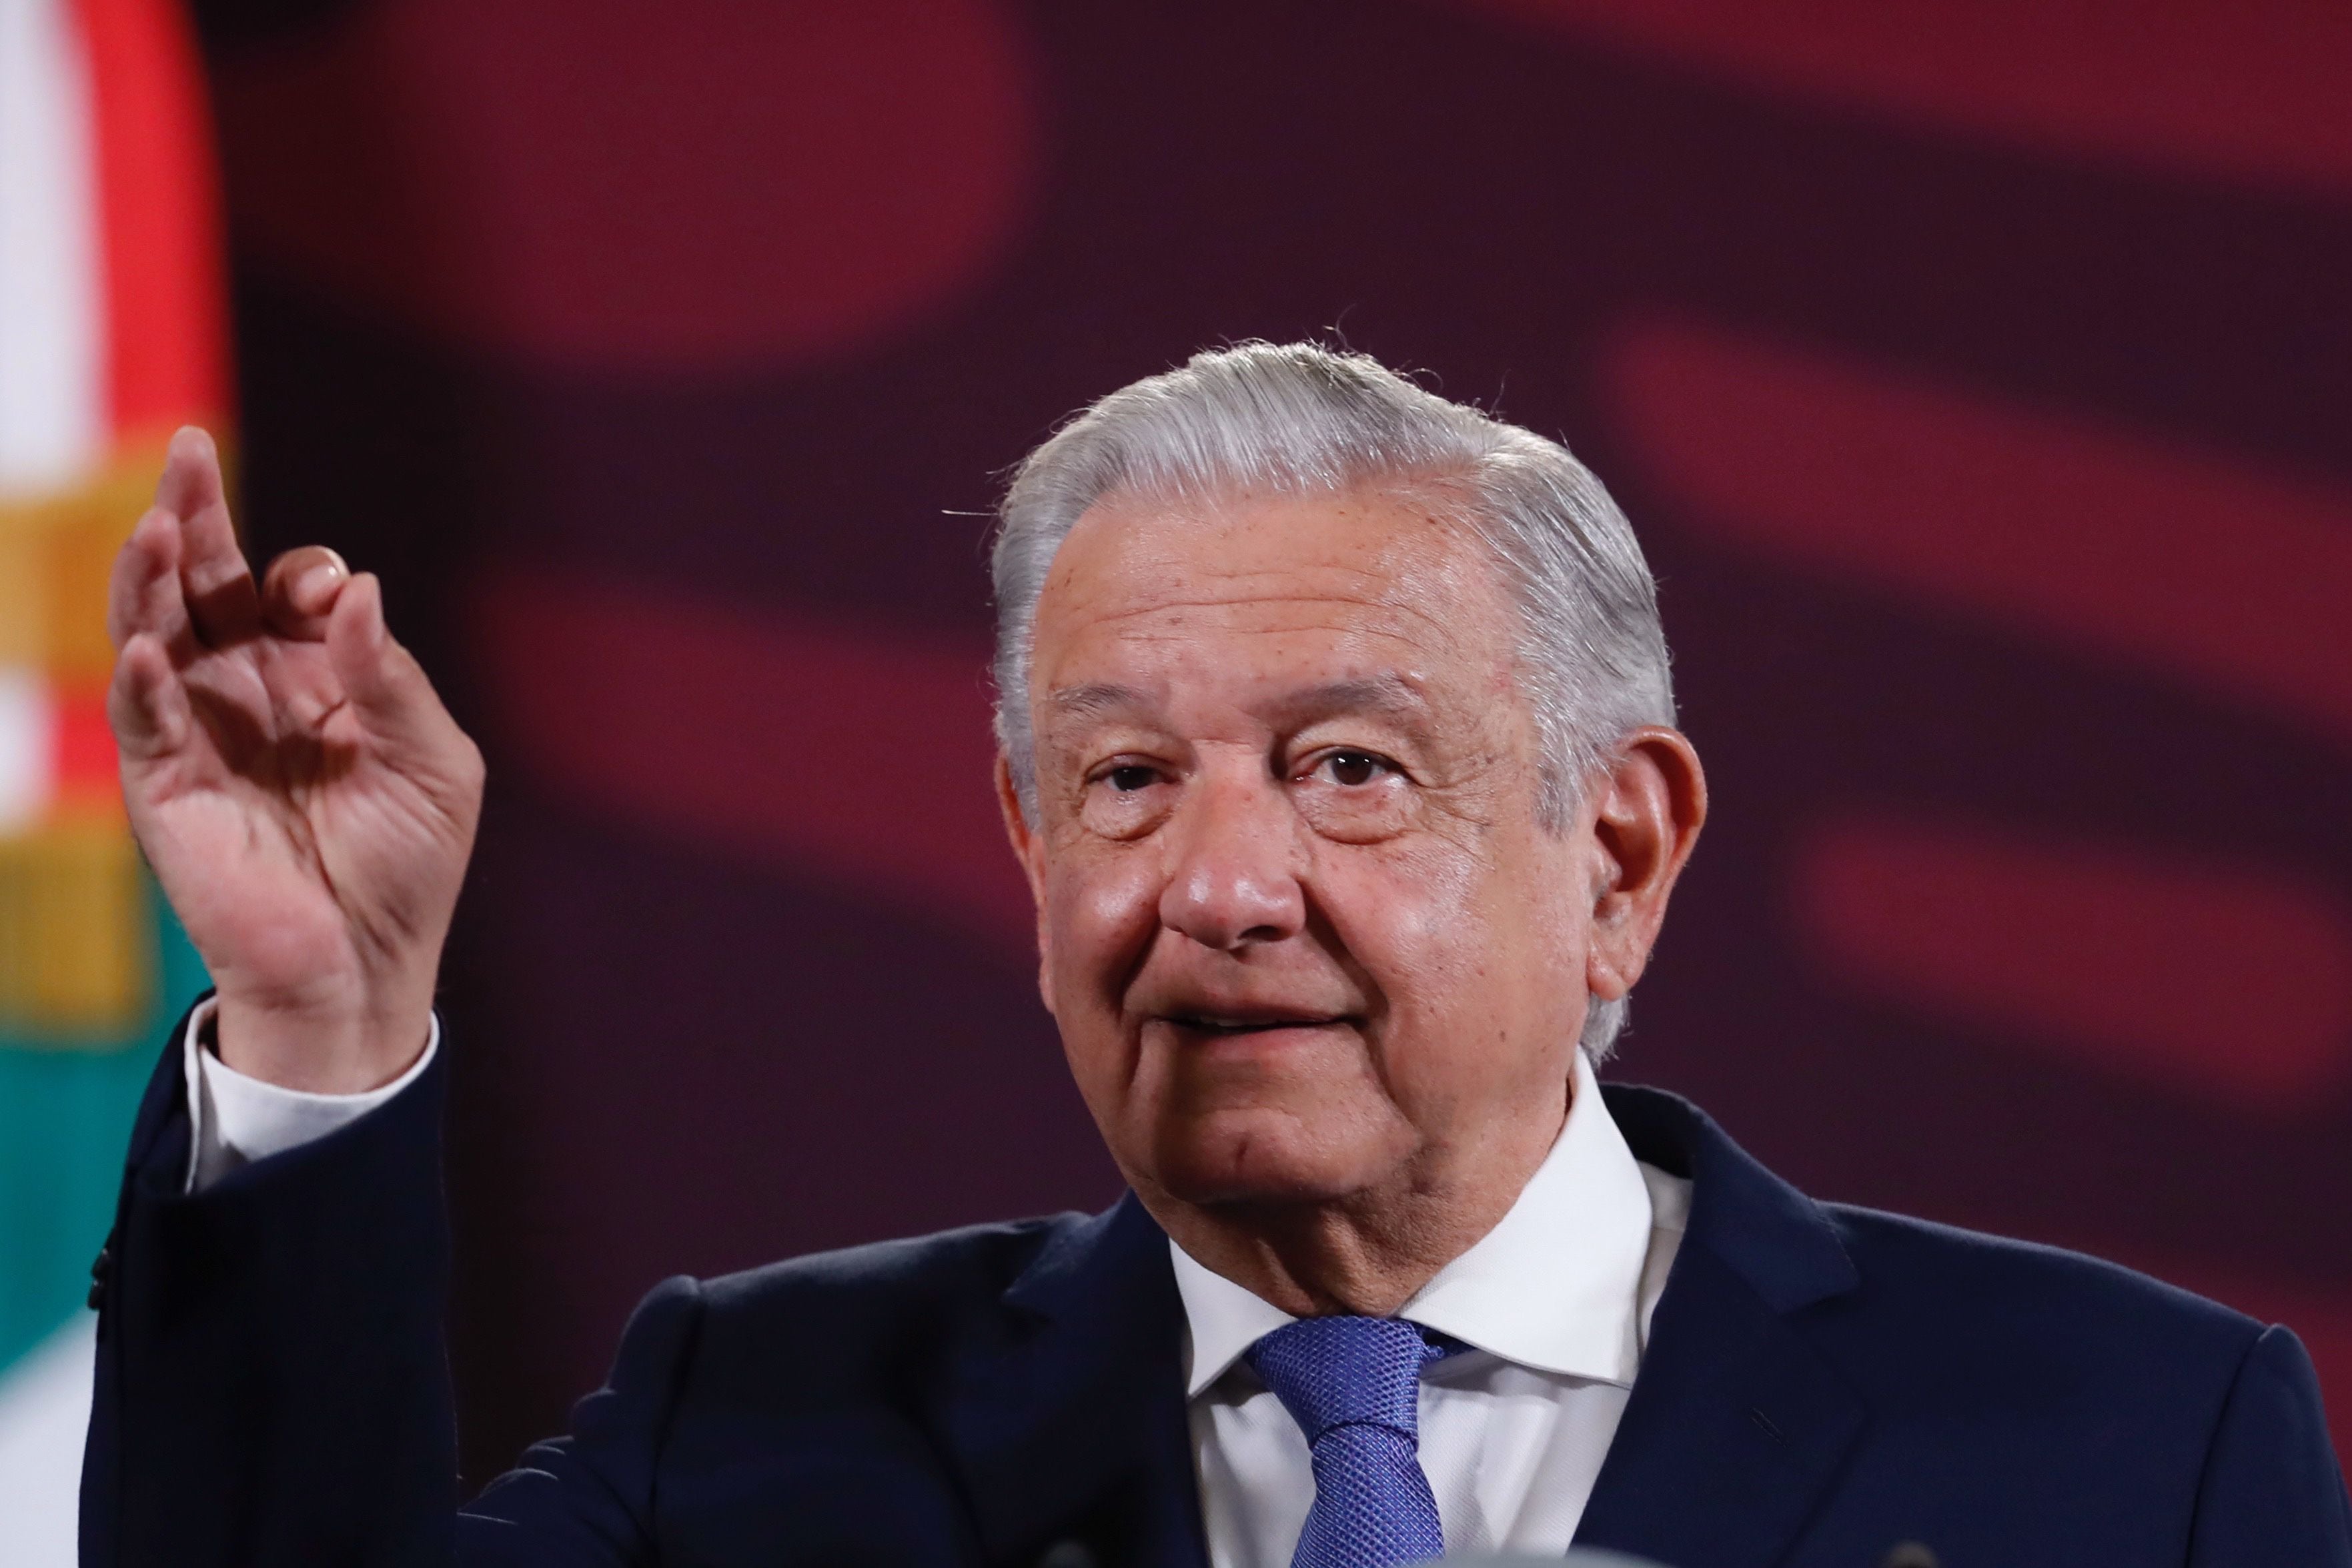 López Obrador tendrá que eliminar o modificar una de sus conferencias de prensa

EFE/Sáshenka Gutiérrez
